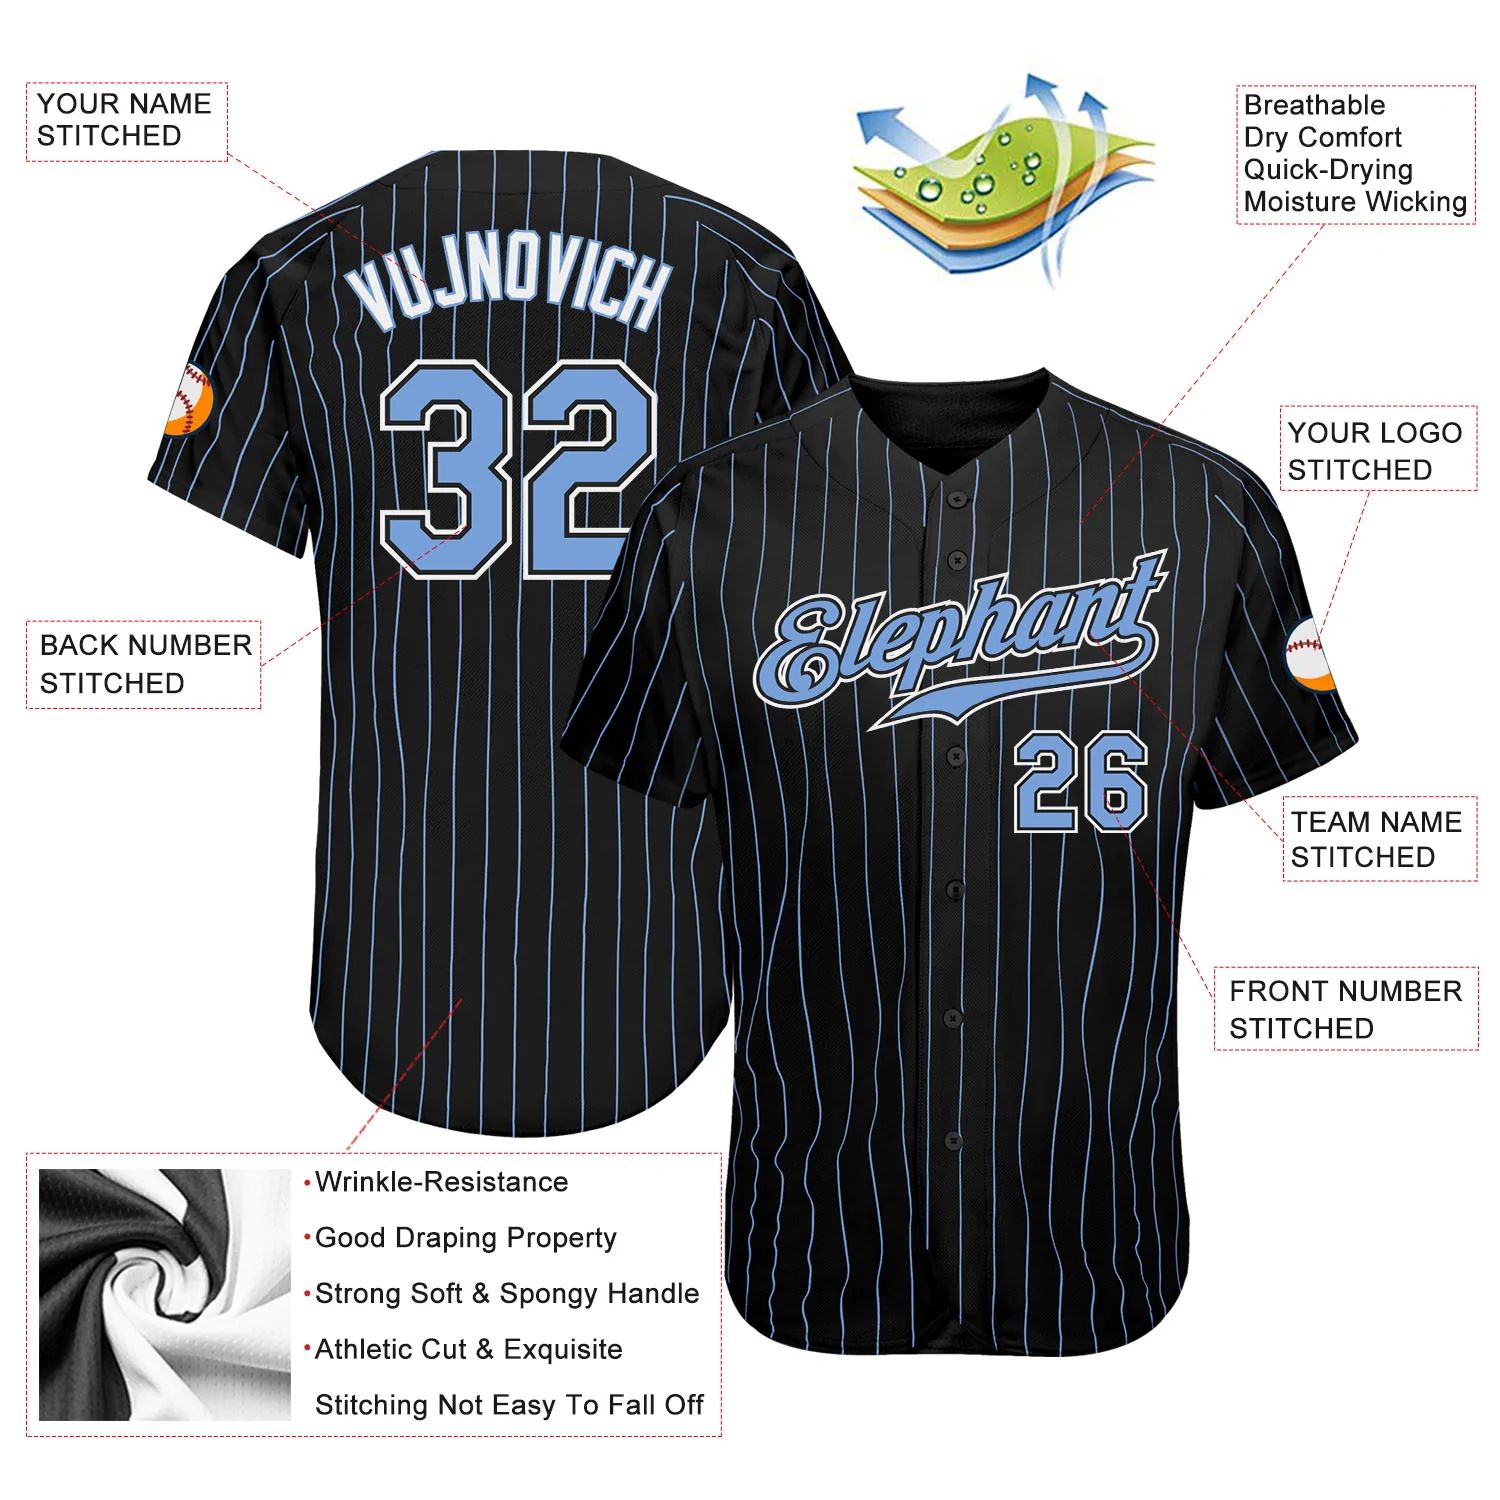 build-white-black-pinstripe-baseball-light-blue-jersey-authentic-black0382-online-3.jpg